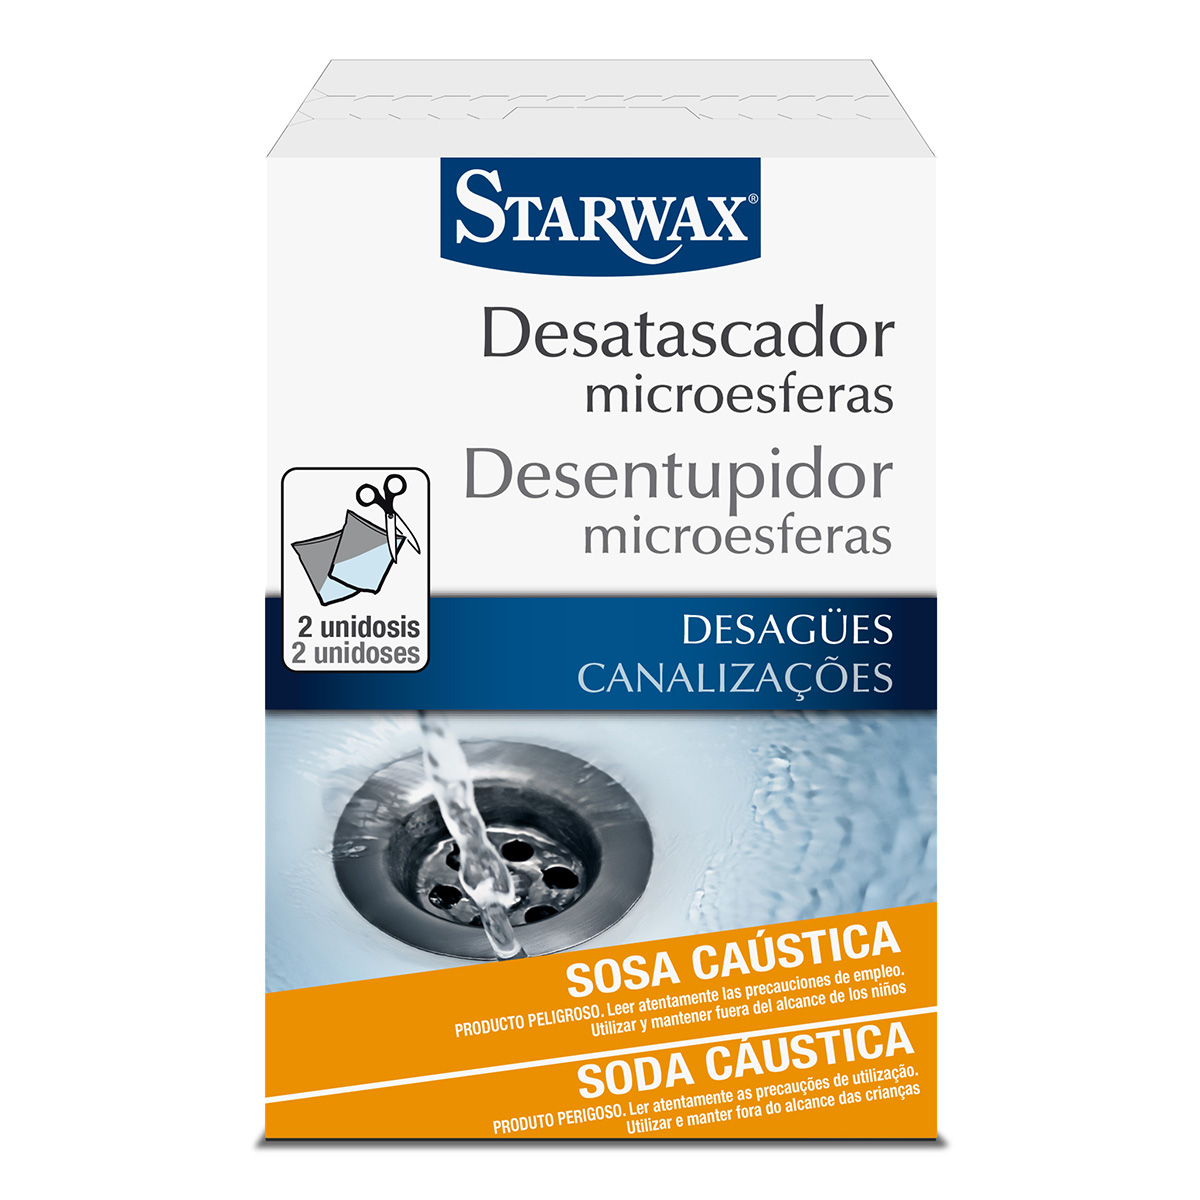 Desatascador microesferas tuberías – Starwax